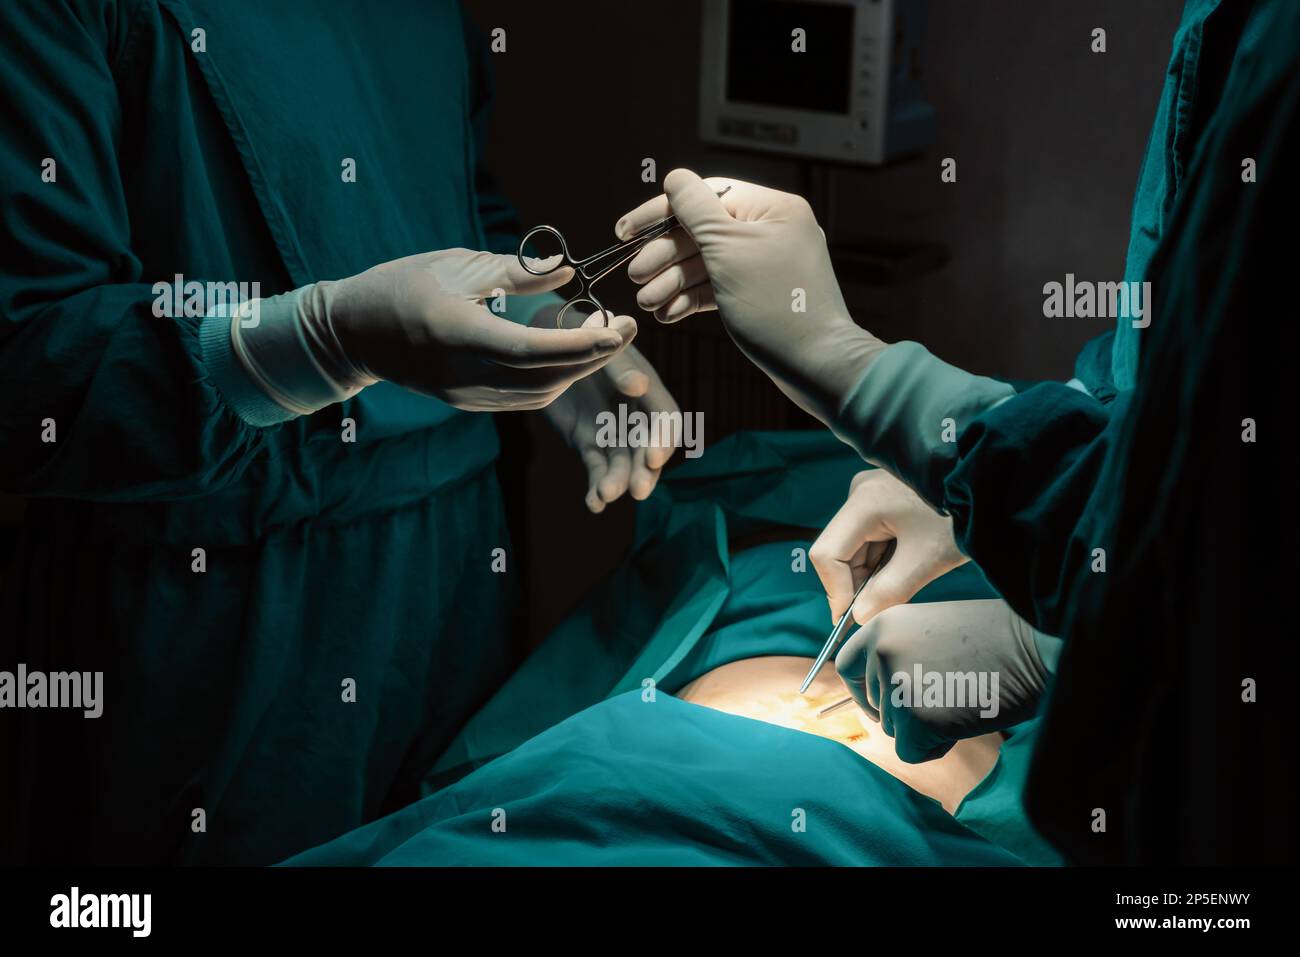 Immagine del team chirurgico eseguire l'operazione chirurgica, l'infermiere  distribuire le forbici sterili al chirurgo come supporto e cooperativa  nella sala operatoria concetto Foto stock - Alamy